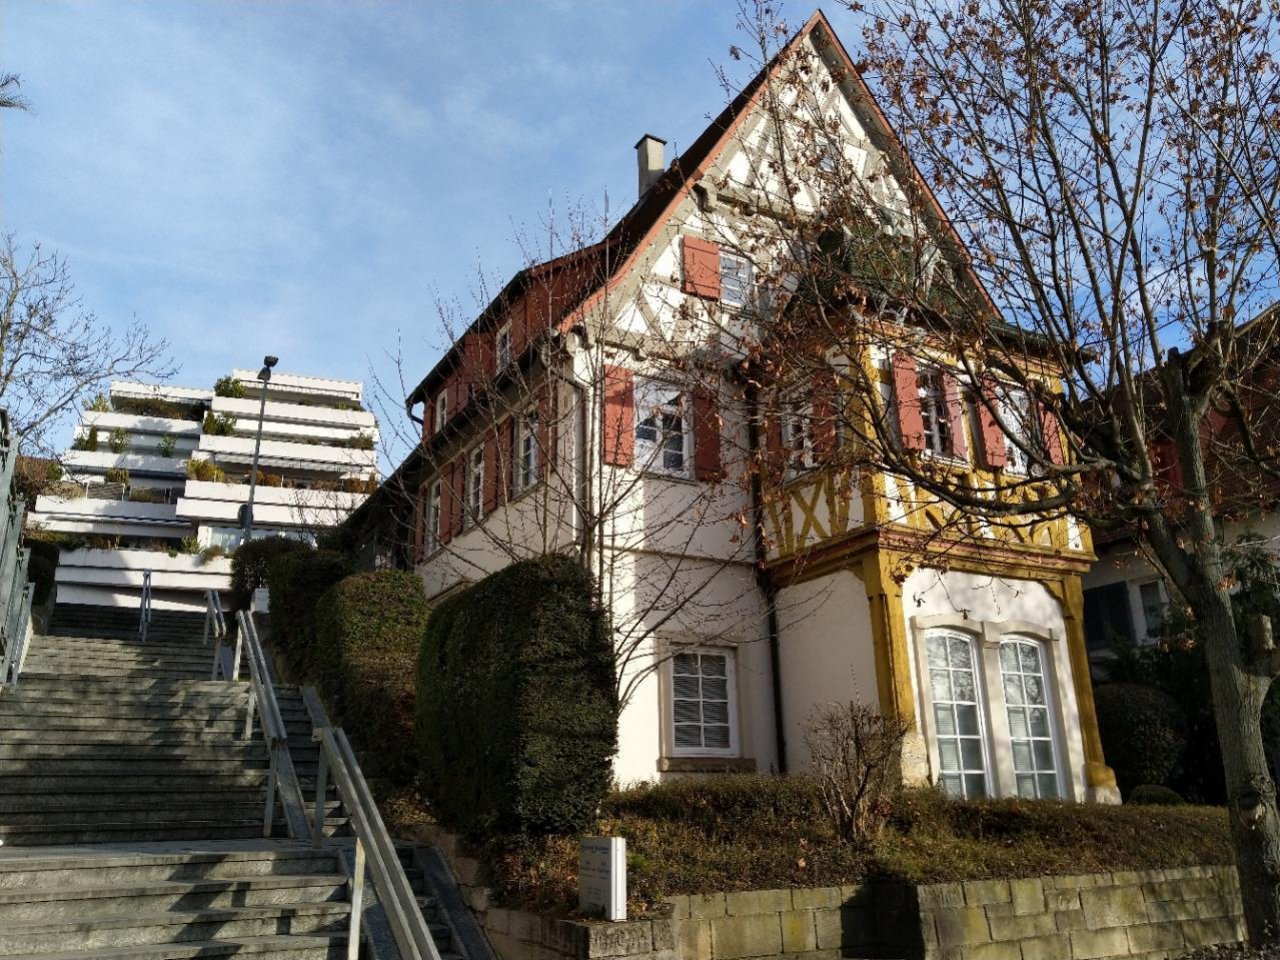 Wohnhaus in Landauf, LandApp BW App spotted by Martin Hahn on 20.12.2020